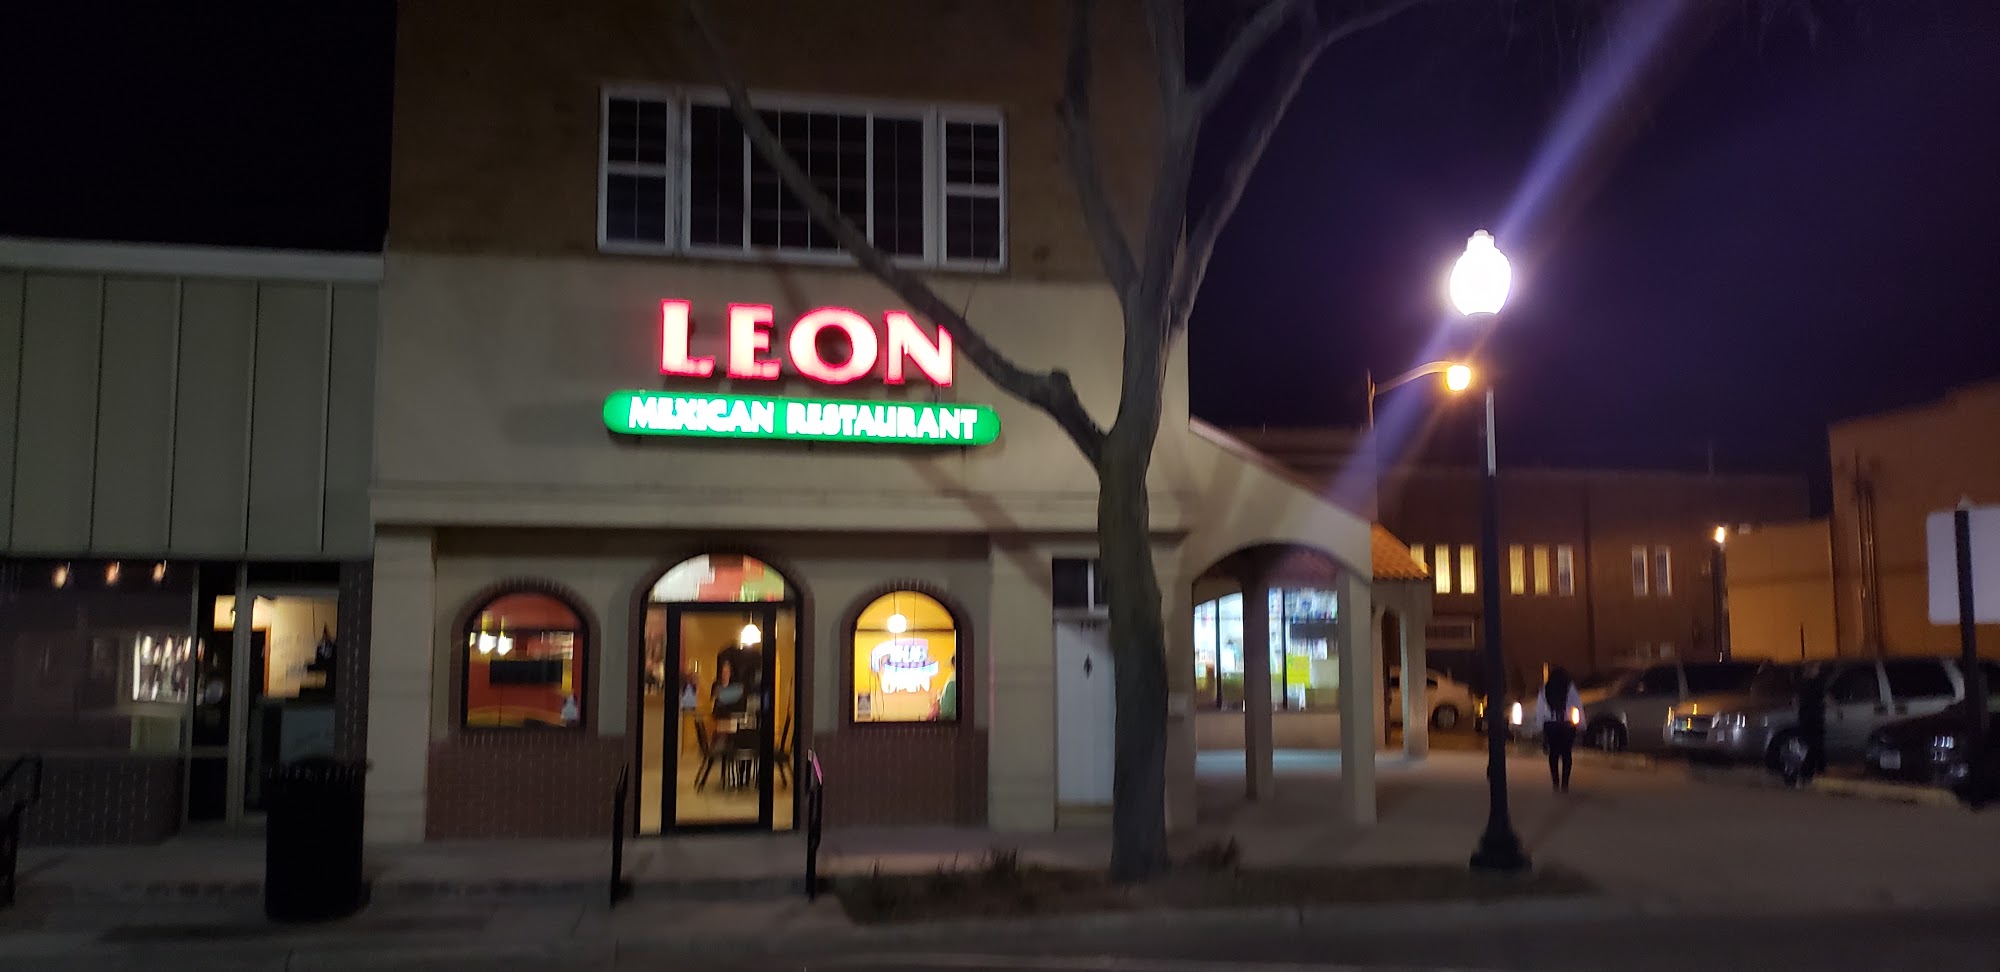 Tienda Leon Grocery Store & Méxican Restaurant